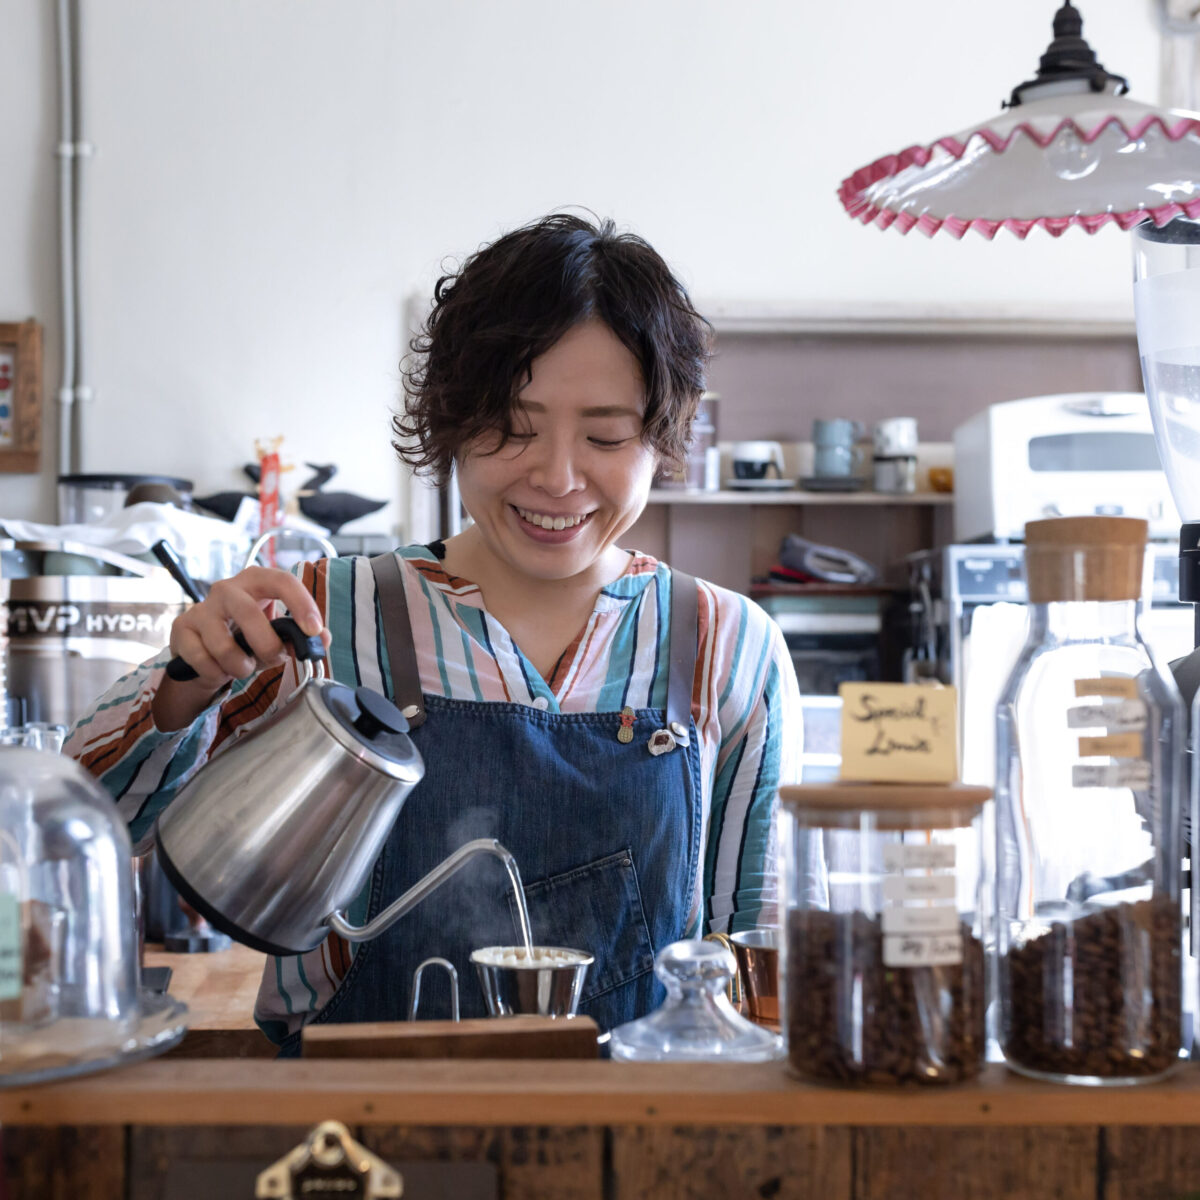 【マルハチ珈琲焙煎舎/ 福岡県北九州市】人の温度感や表情を感じられるコーヒーにフォーカスし、あなたの生活にそっと寄り添う